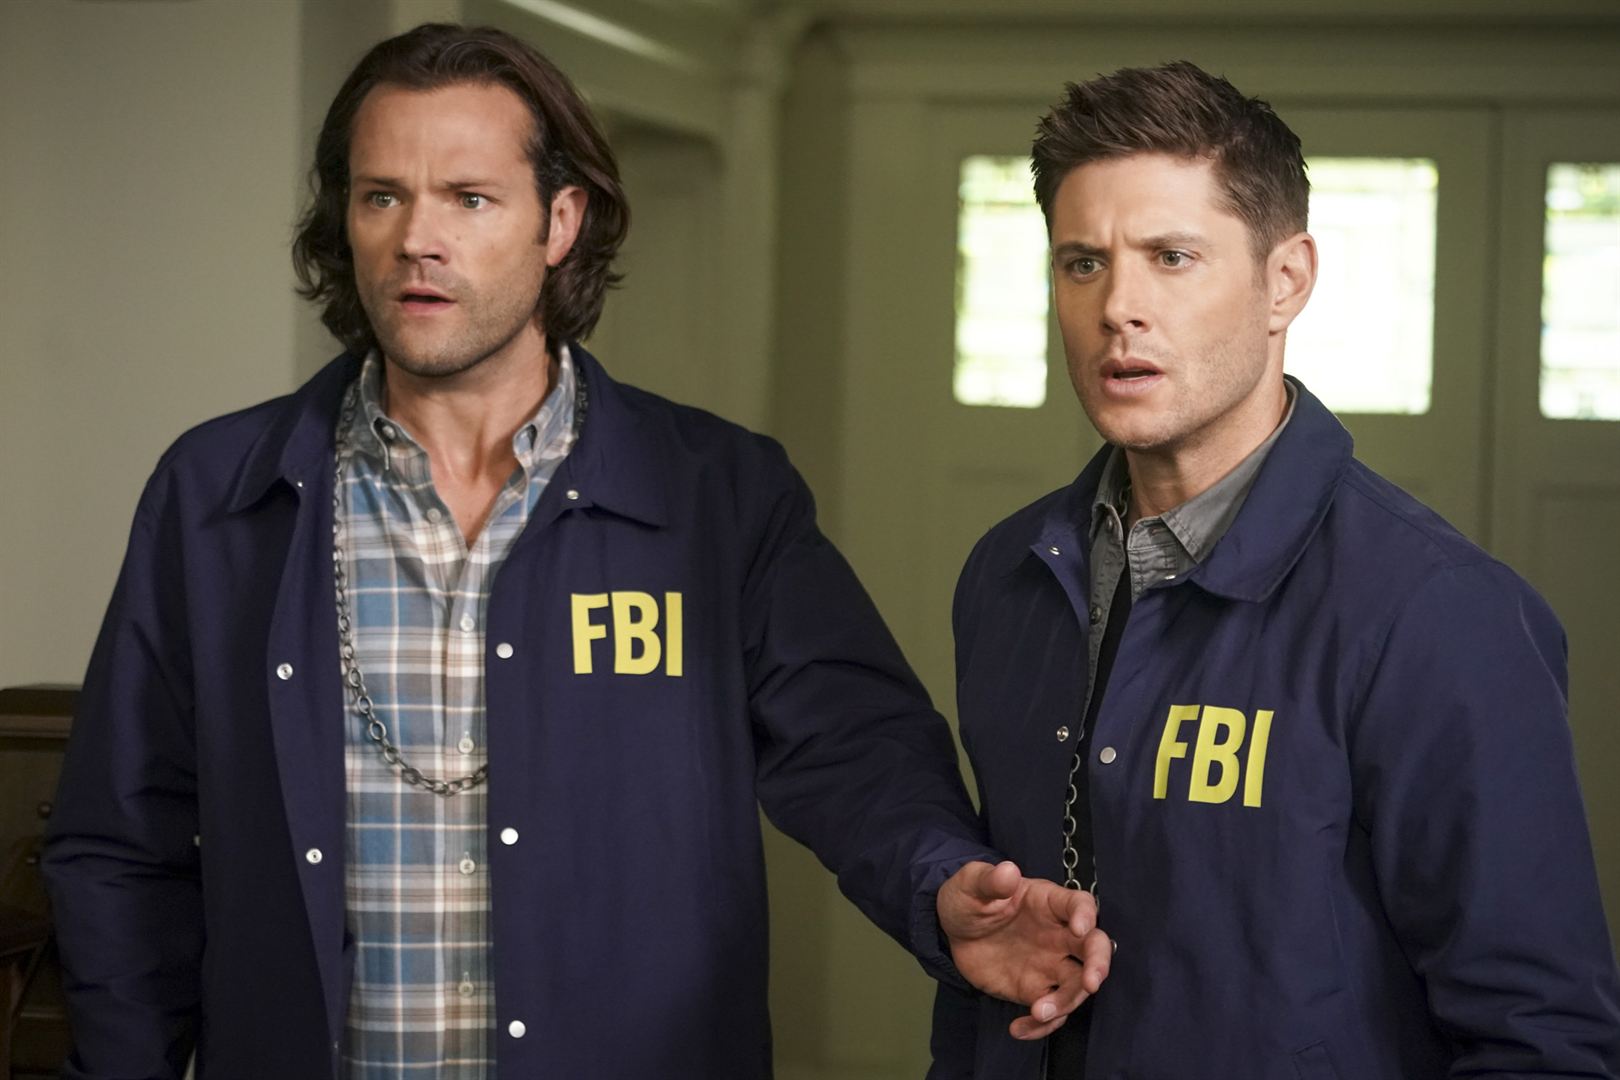 Cena de Supernatural. Sam e Dean estão vestidos com roupas do FBI, uma jaqueta azul por cima de suas roupas em um fundo claro. Eles olham espantados para algo fora da imagem e Sam está com a mão no abdômen de Dean.